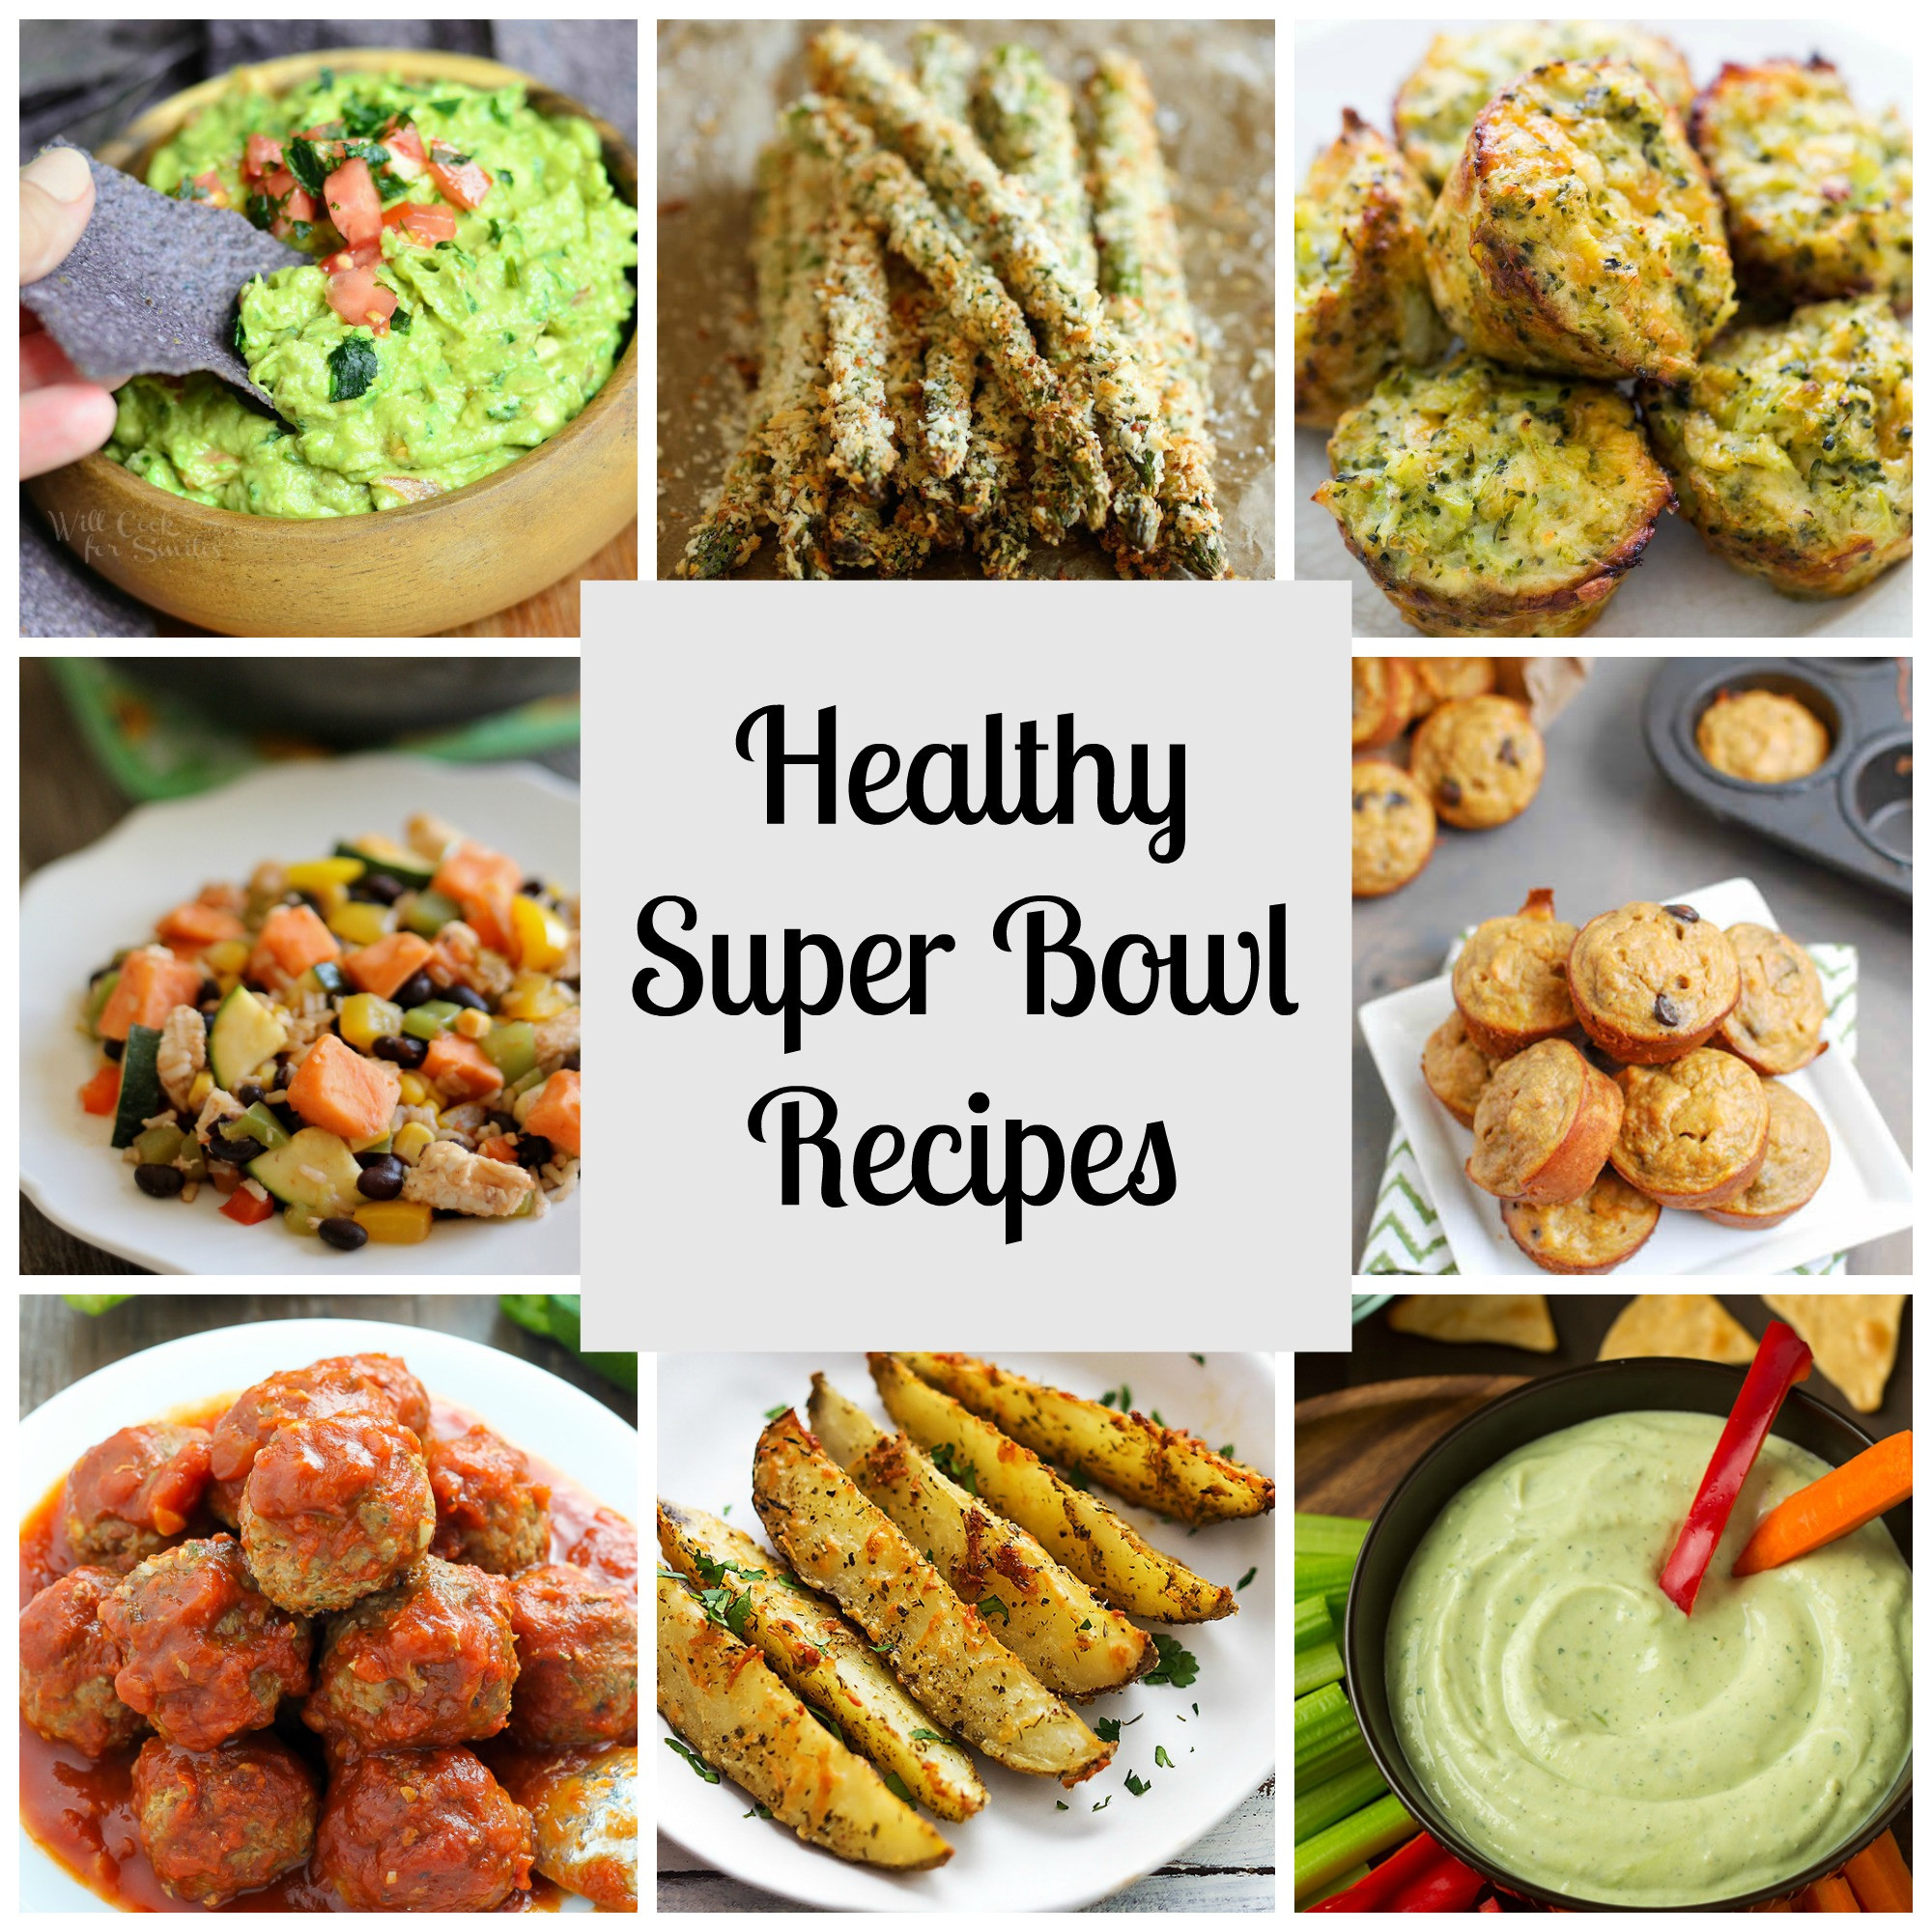 Super Bowl Dishes Recipes
 Healthy Super Bowl Recipes RunEatSnap